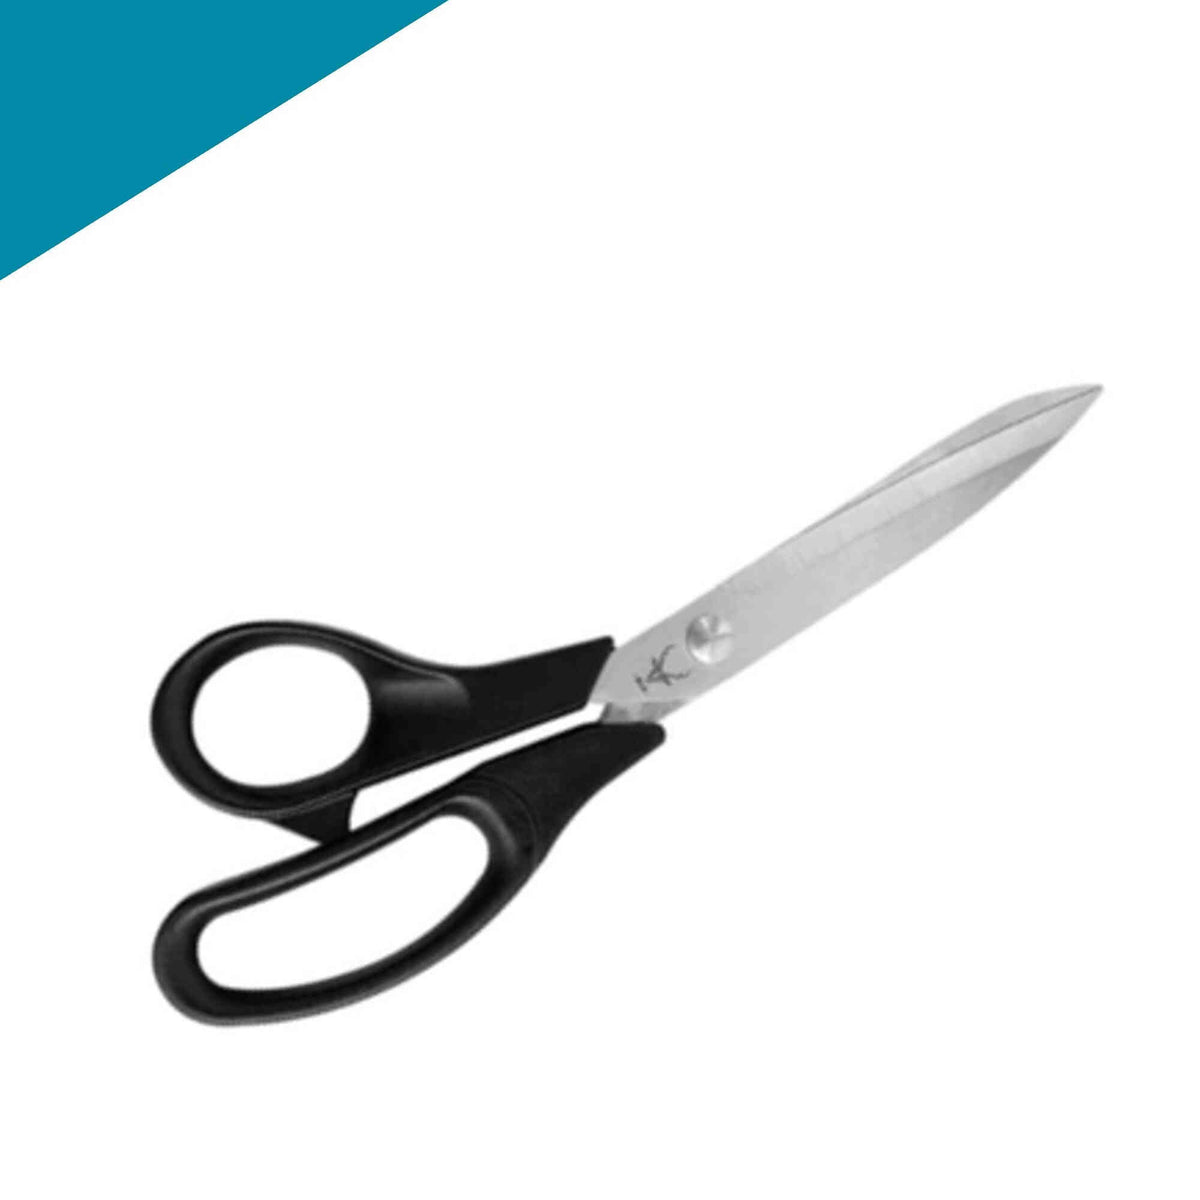 https://bladeologyaustralia.com/cdn/shop/products/elk-dressmaking-scissors-21cm-left-handed-NW.jpg?v=1675507881&width=1200